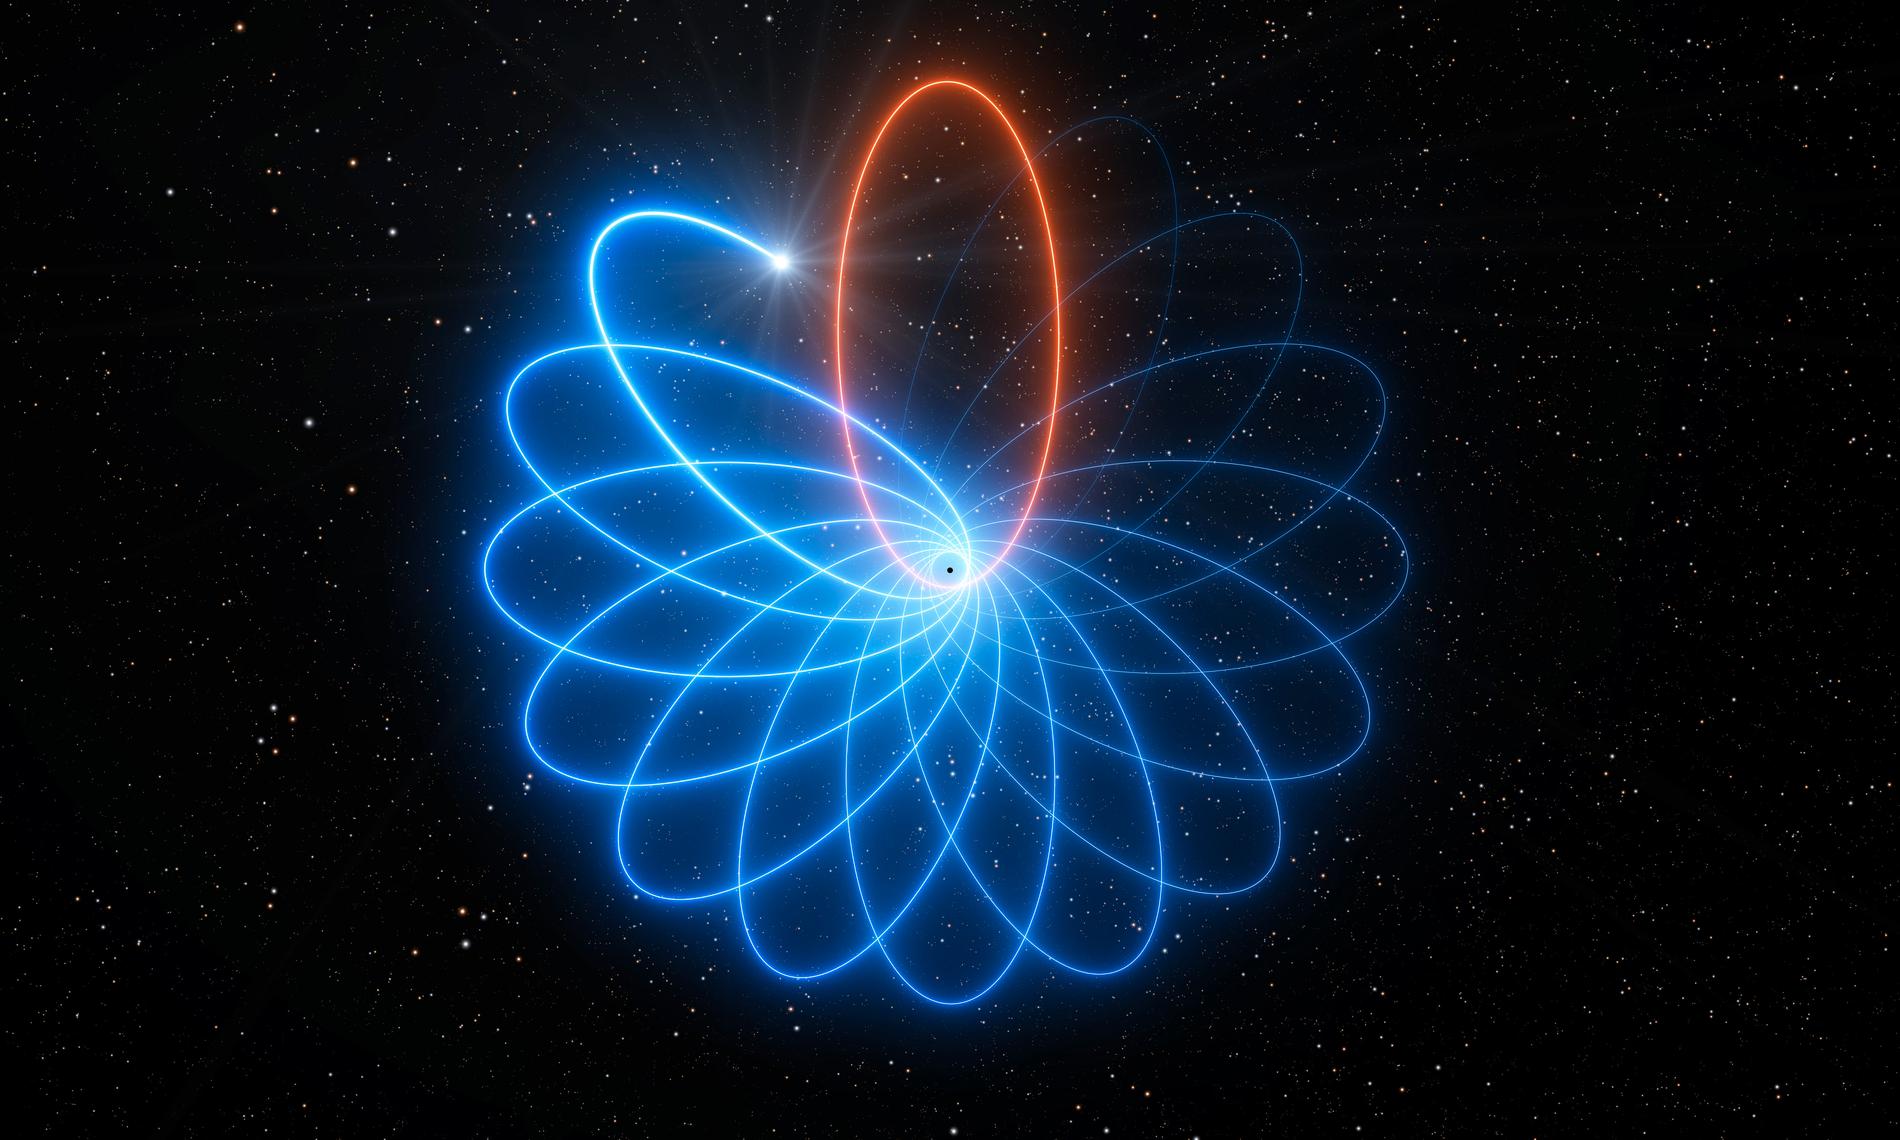 Stjärnan S2 ligger ungefär 26 000 ljusår från jorden och kretsar kring det svarta hålet i Vintergatans centrum. Banan är inte plan (röd), utan spiralformad (blå). I den här illustrationen har banans form överdrivits.